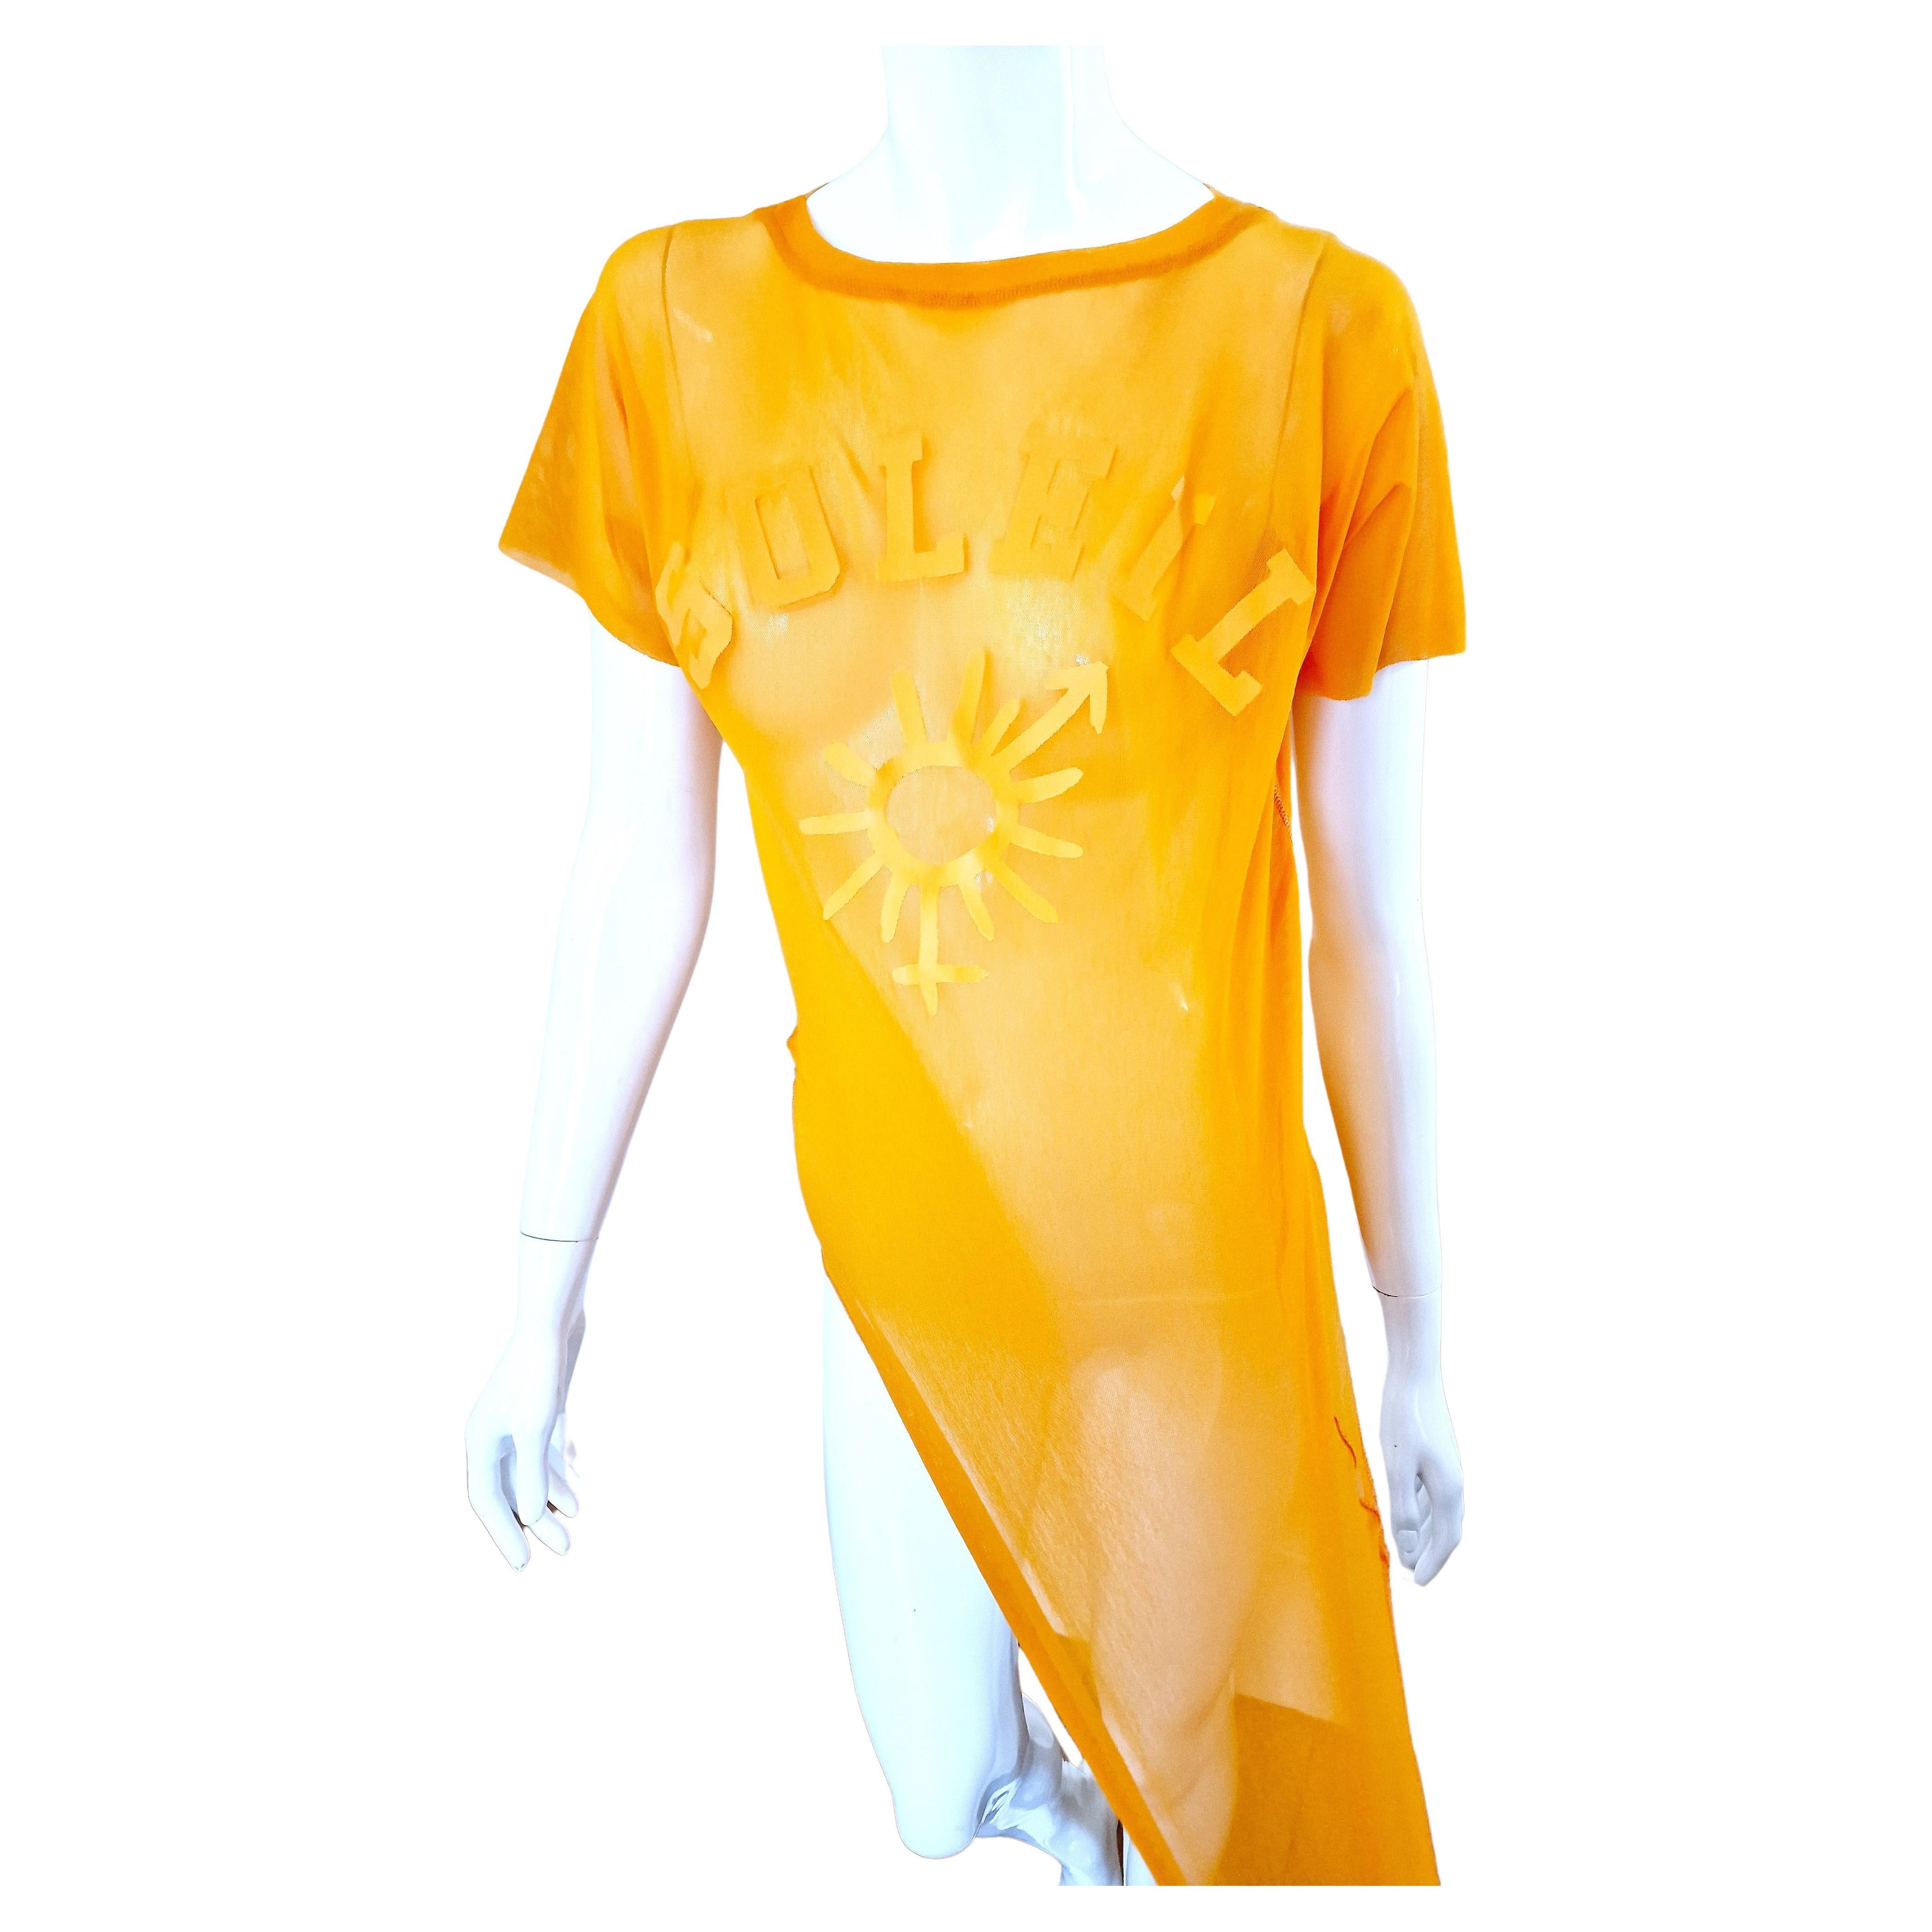 Jean Paul Gaultier Sex Sybmol Soleil Orange Logo Text Men Shirt Large XL Top For Sale